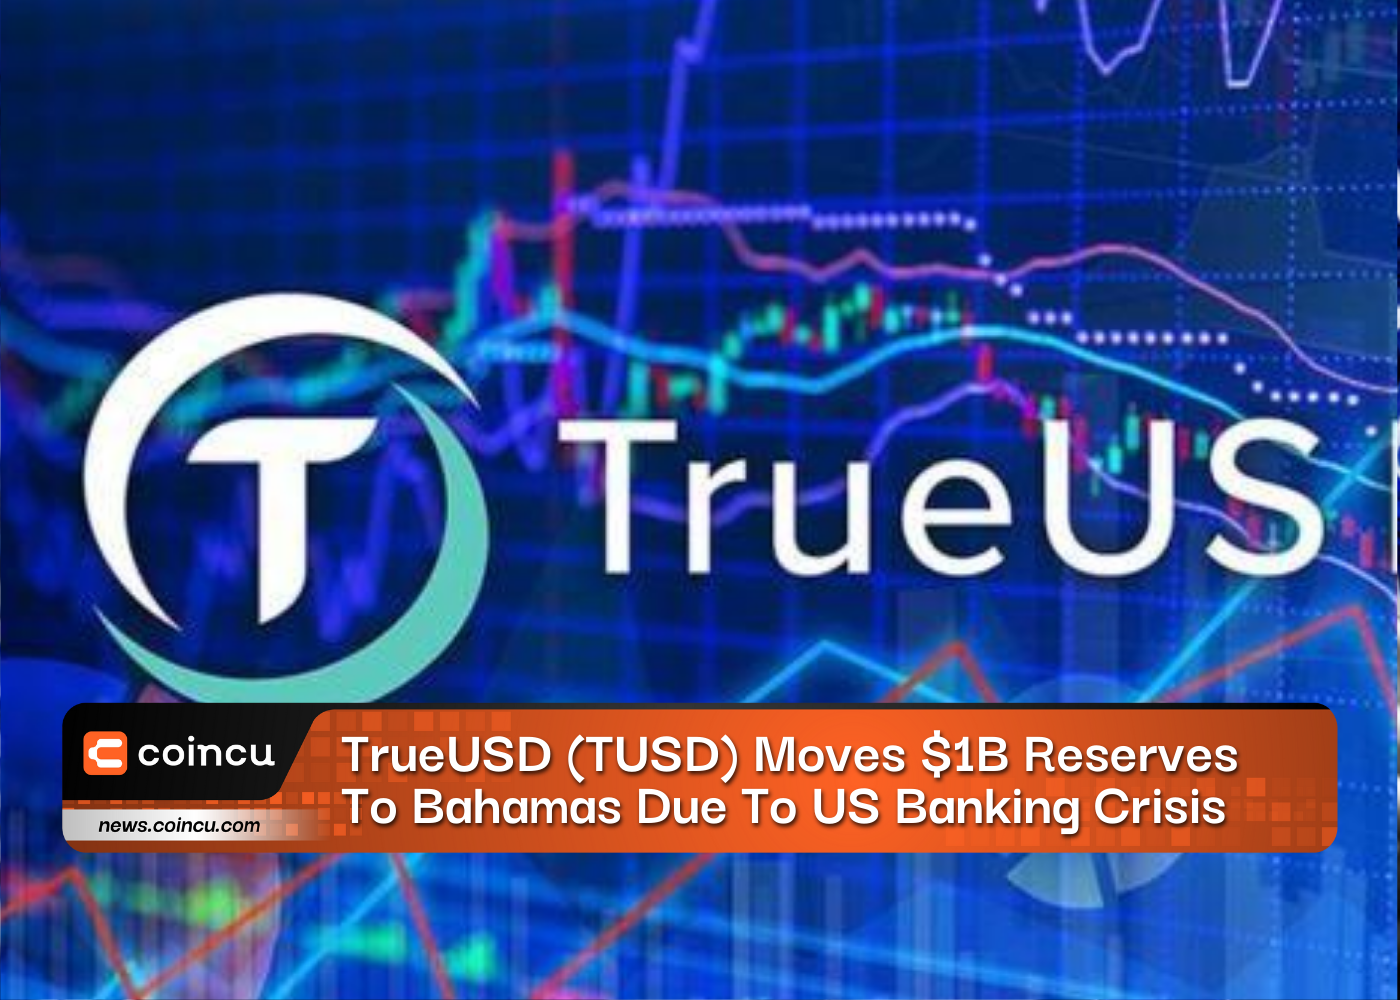 TrueUSD (TUSD) chuyển khoản dự trữ 1 tỷ USD sang Bahamas do khủng hoảng ngân hàng Hoa Kỳ